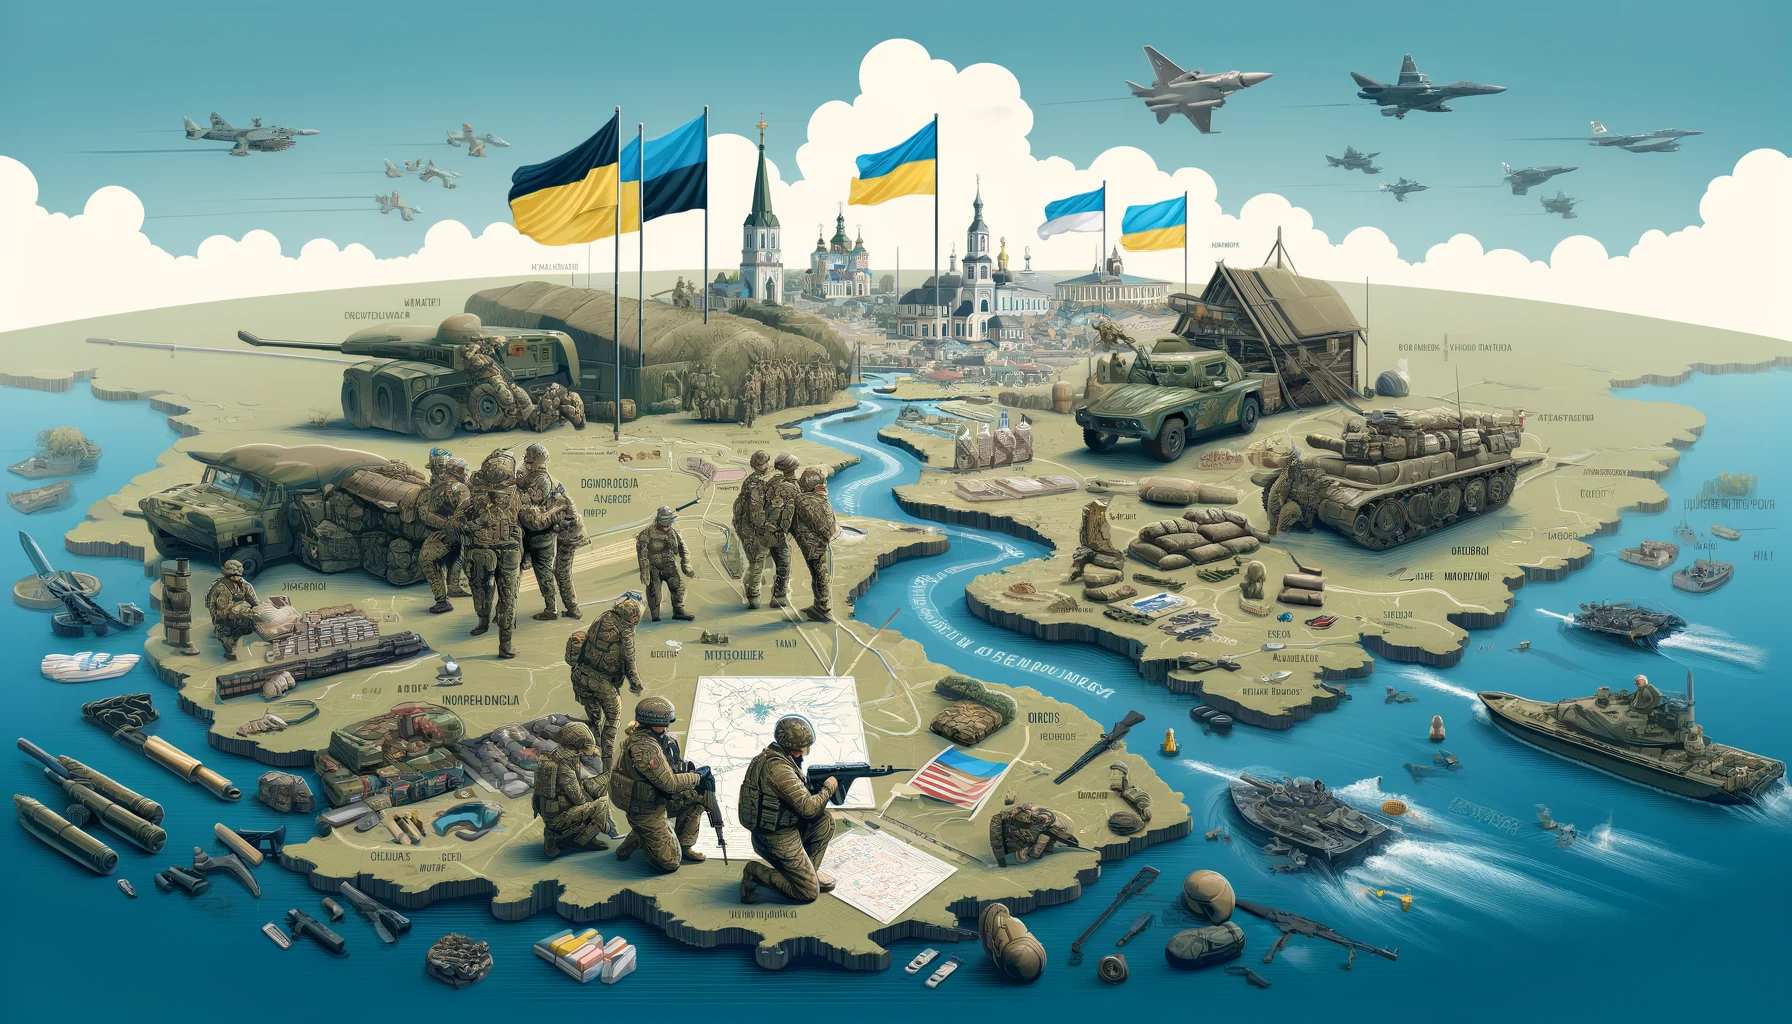 Chasowy Jar kluczowy dla obrony Kramatorska – analiza sytuacji na froncie wschodniej Ukrainy